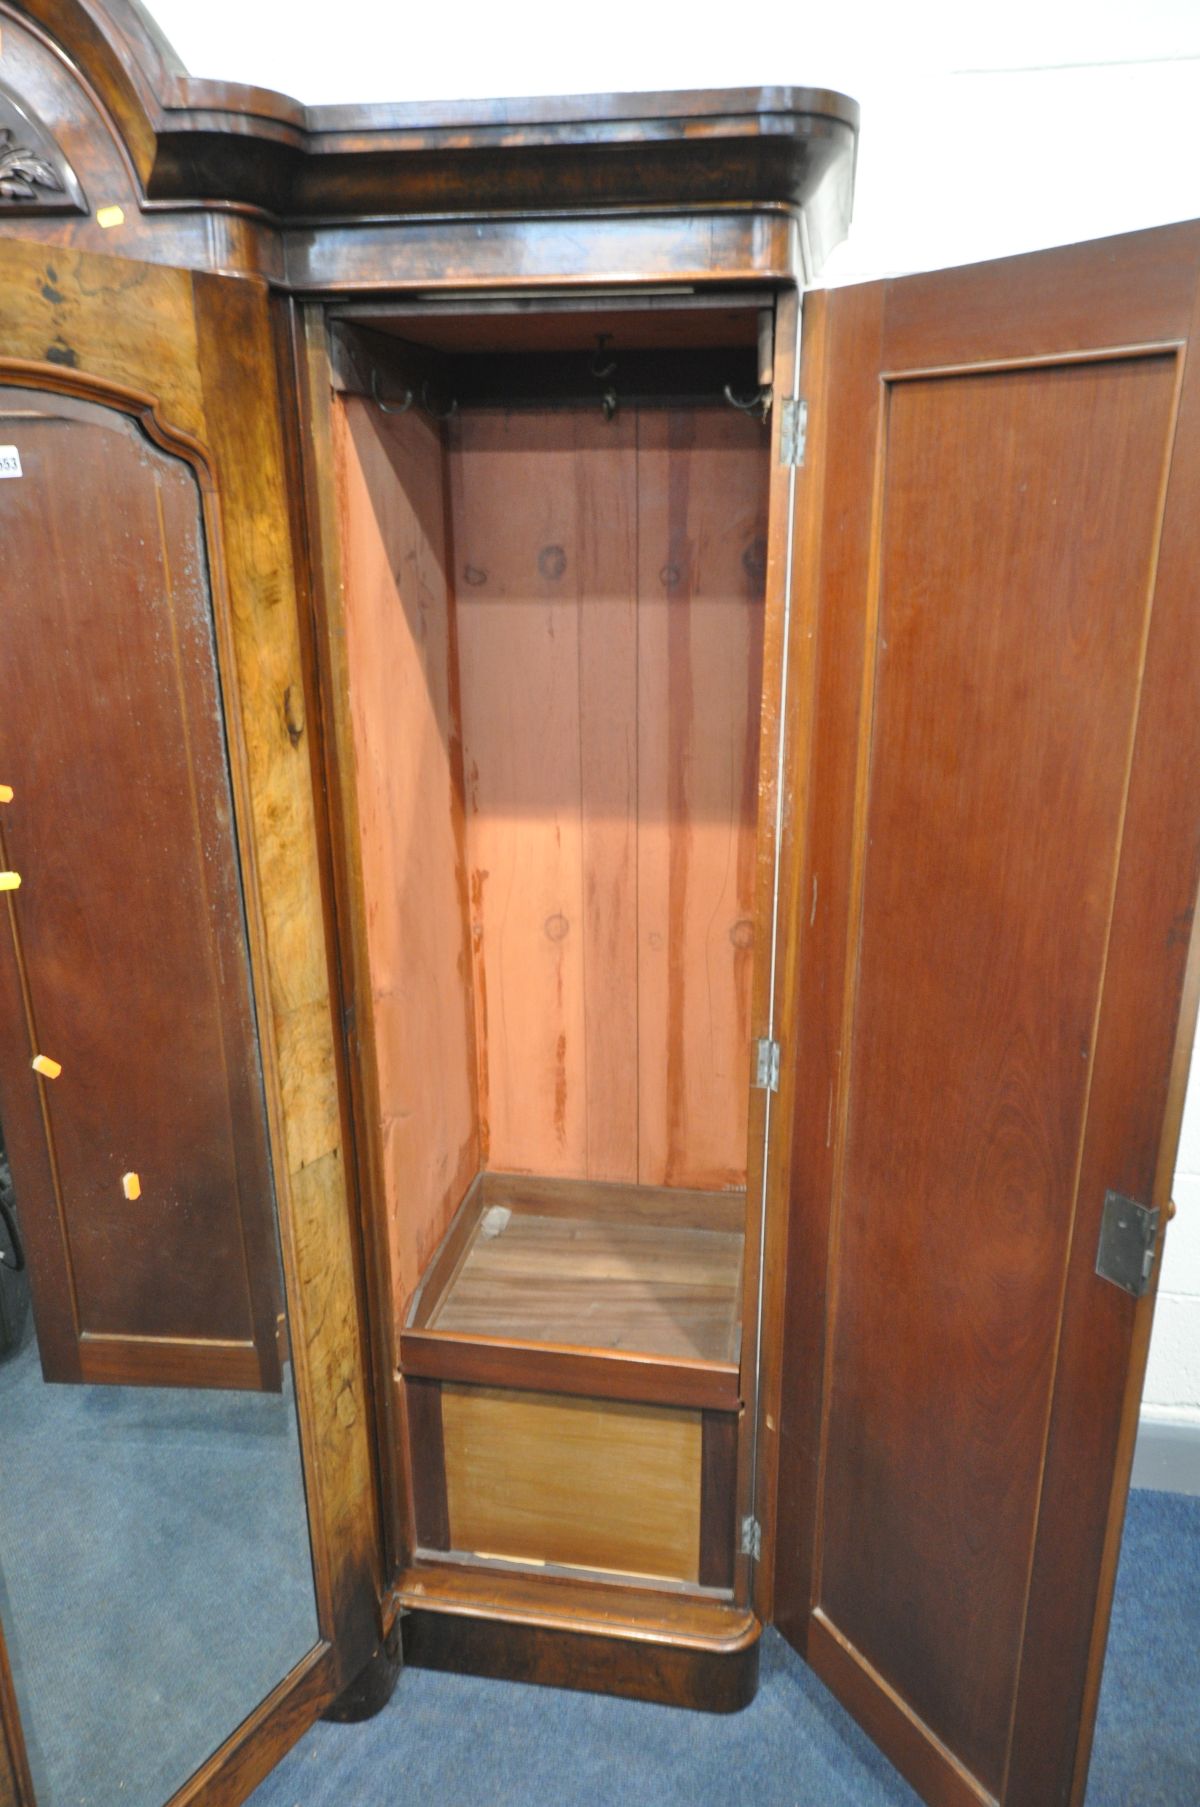 A VICTORIAN WALNUT BREAKFRONT TRIPLE DOOR WARDROBE, with book matched figured walnut veneers to - Image 5 of 5